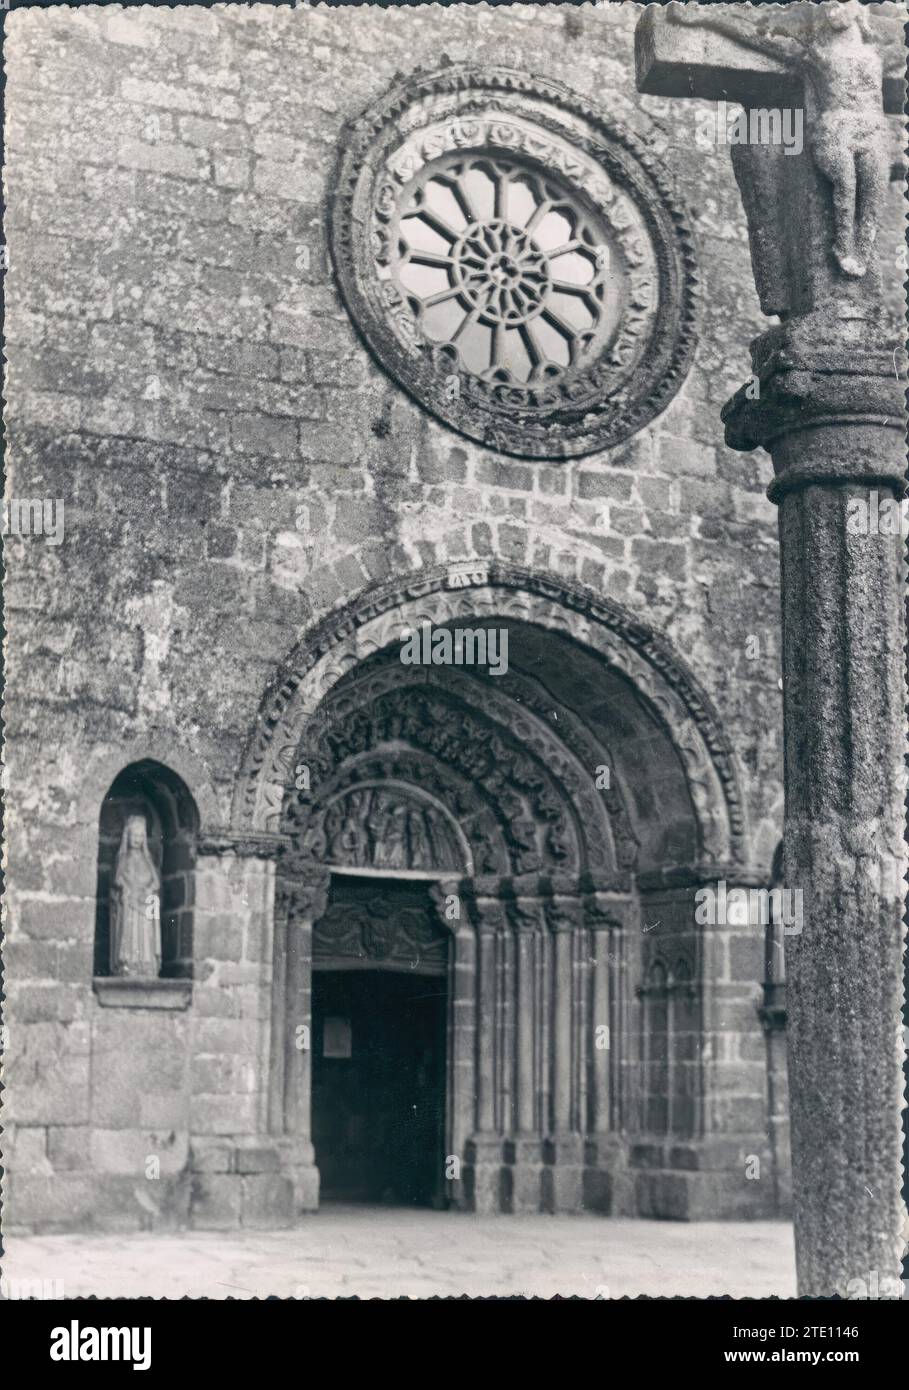 12/31/1958. Romanesque rose window in the church of Santa María del Azogue (Betanzos). Credit: Album / Archivo ABC / Marques De Santa María Del Villar Stock Photo